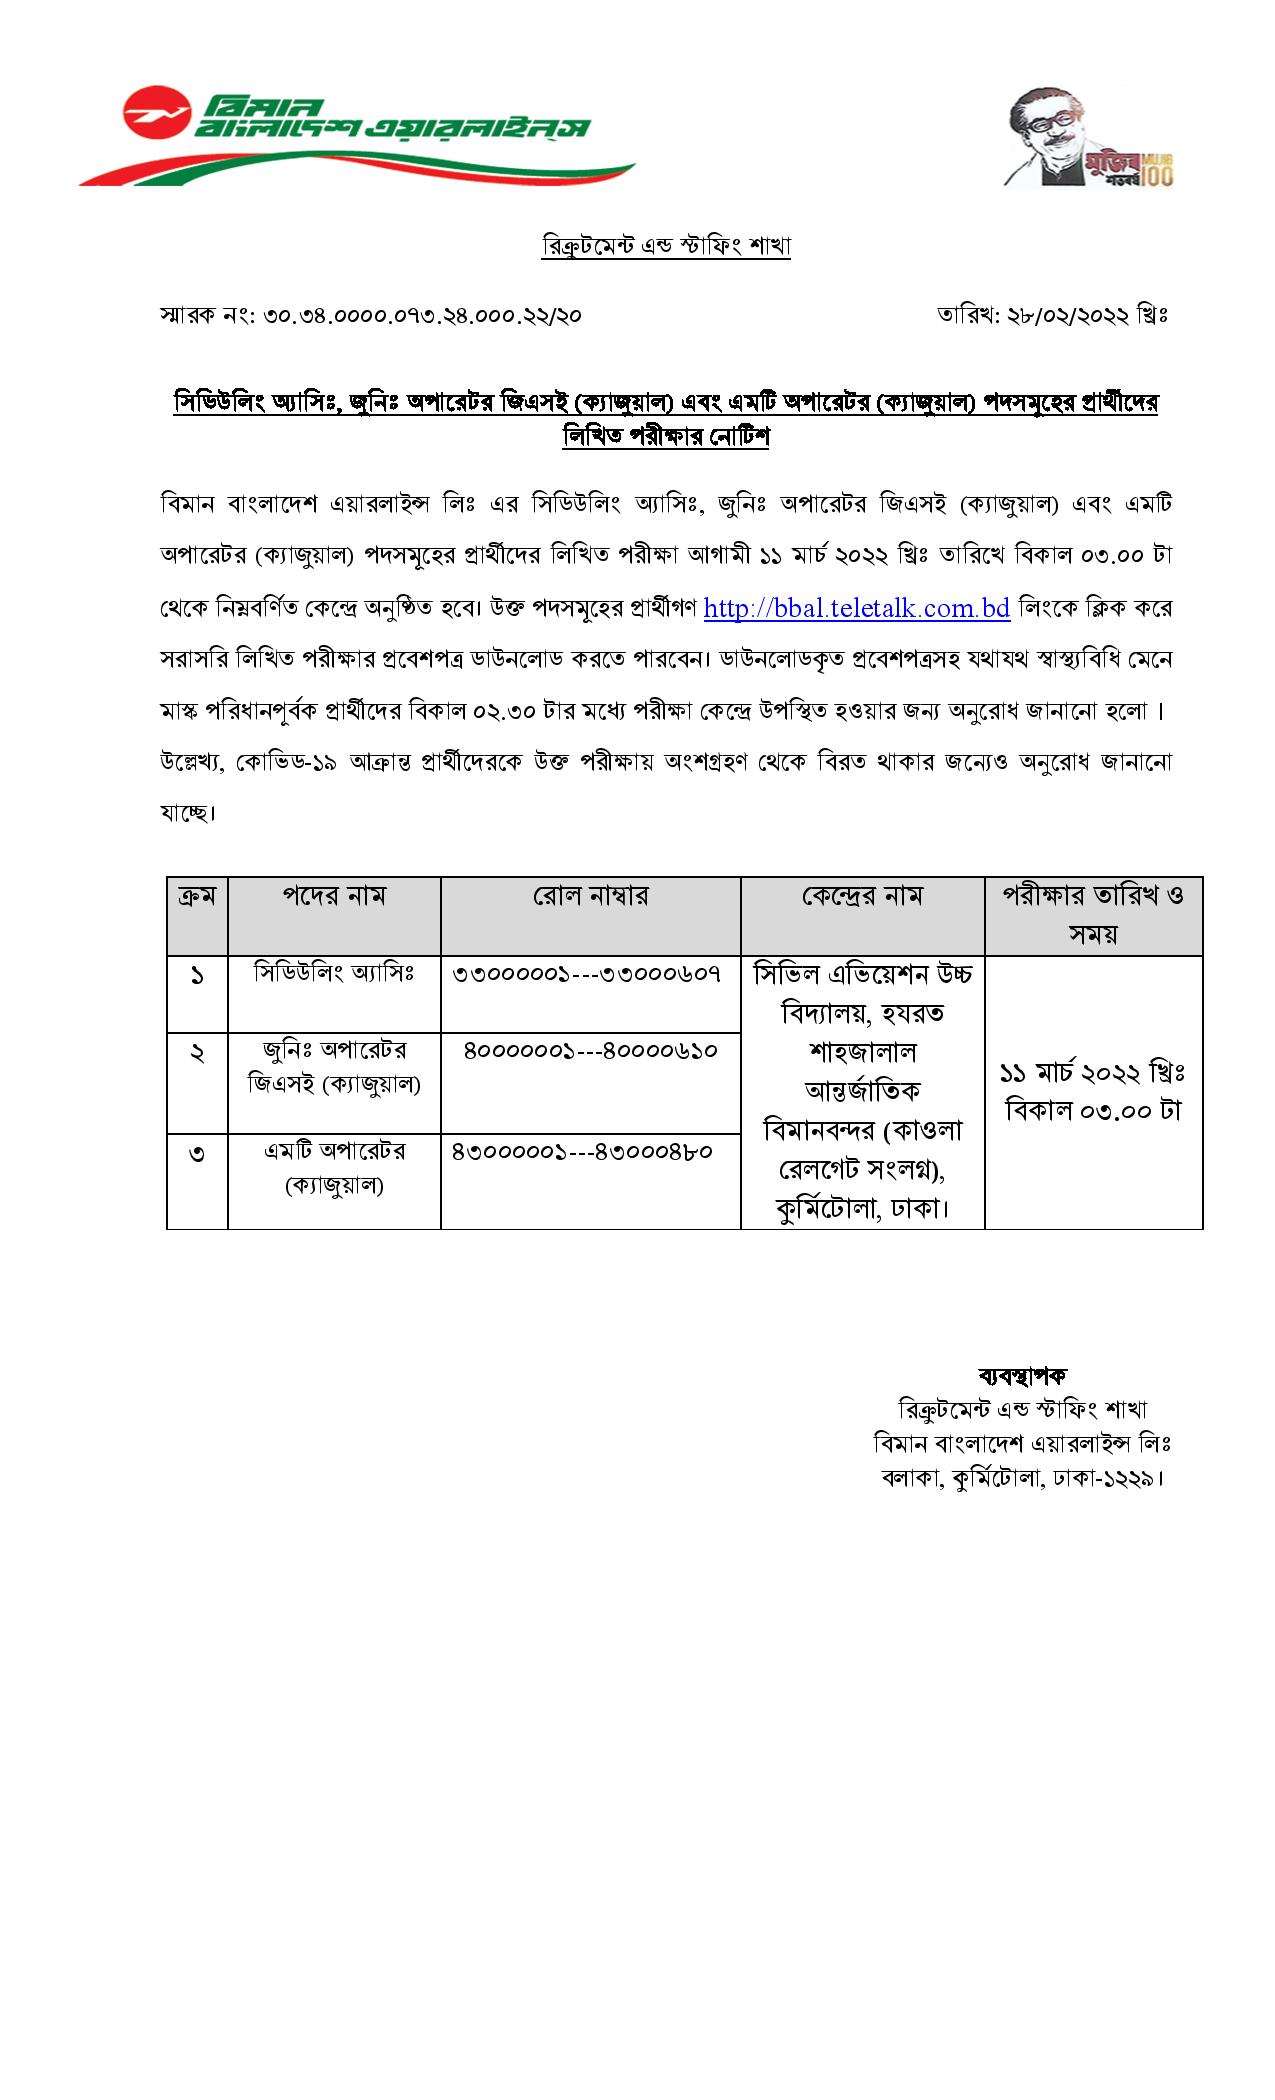 বিমান বাংলাদেশ এয়ারলাইনস এর লিখিত পরীক্ষার সময়সূচি প্রকাশ। Biman Bangladesh Airlines written exam schedule published